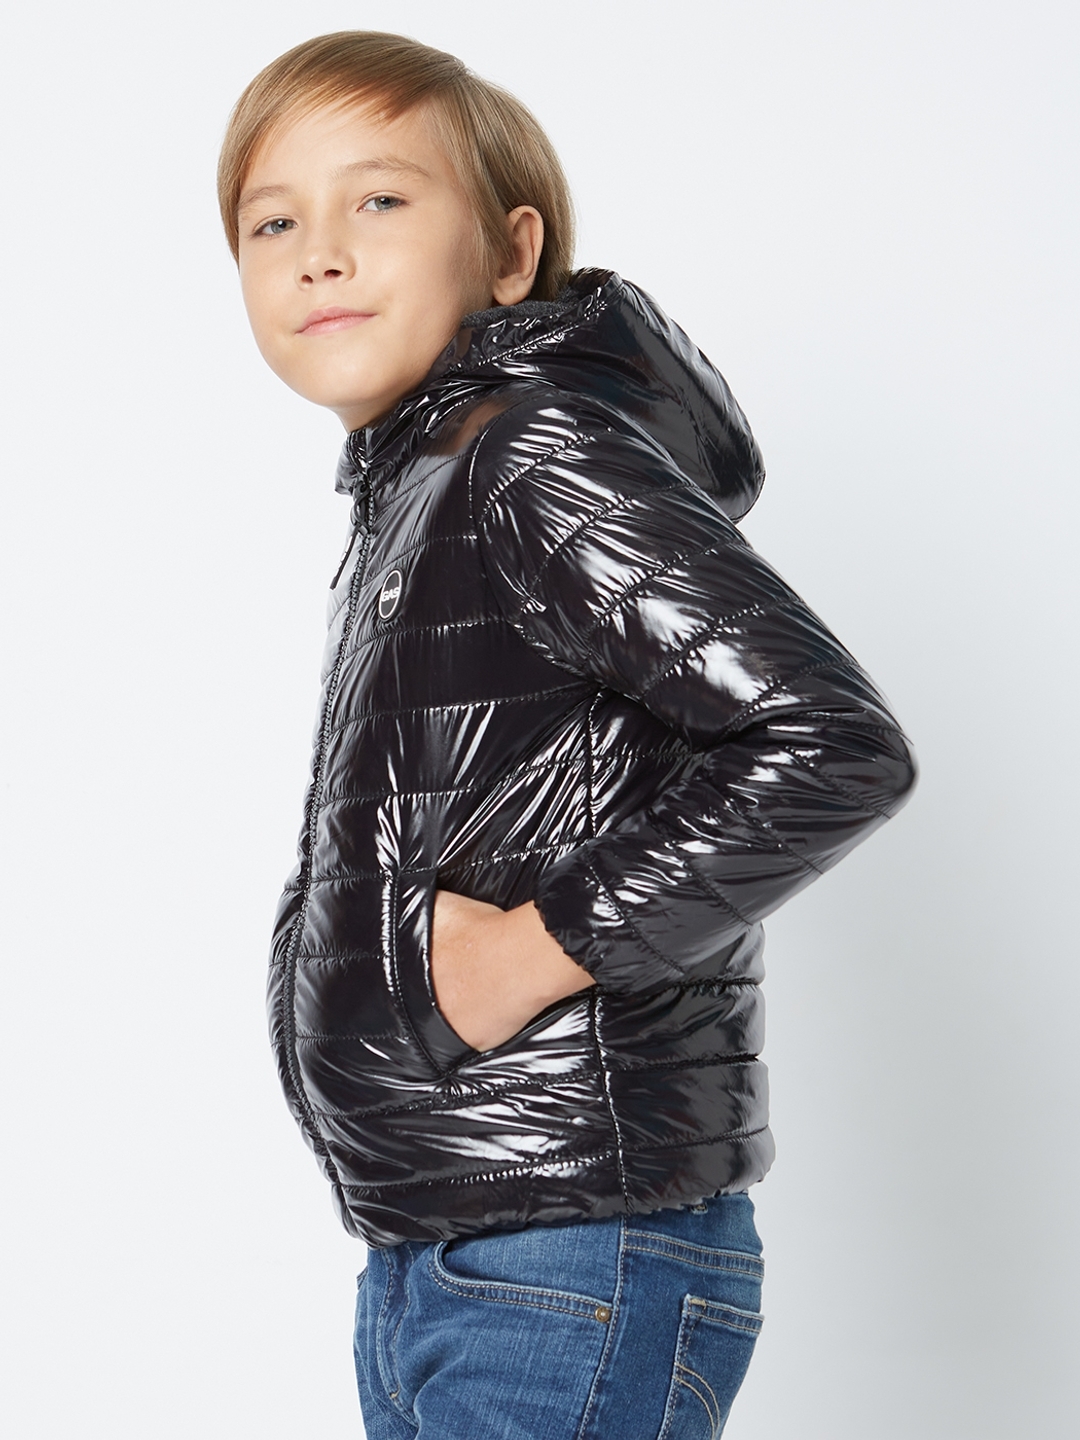 Boys Clothing | Cute Boy Winter Jacket | Freeup